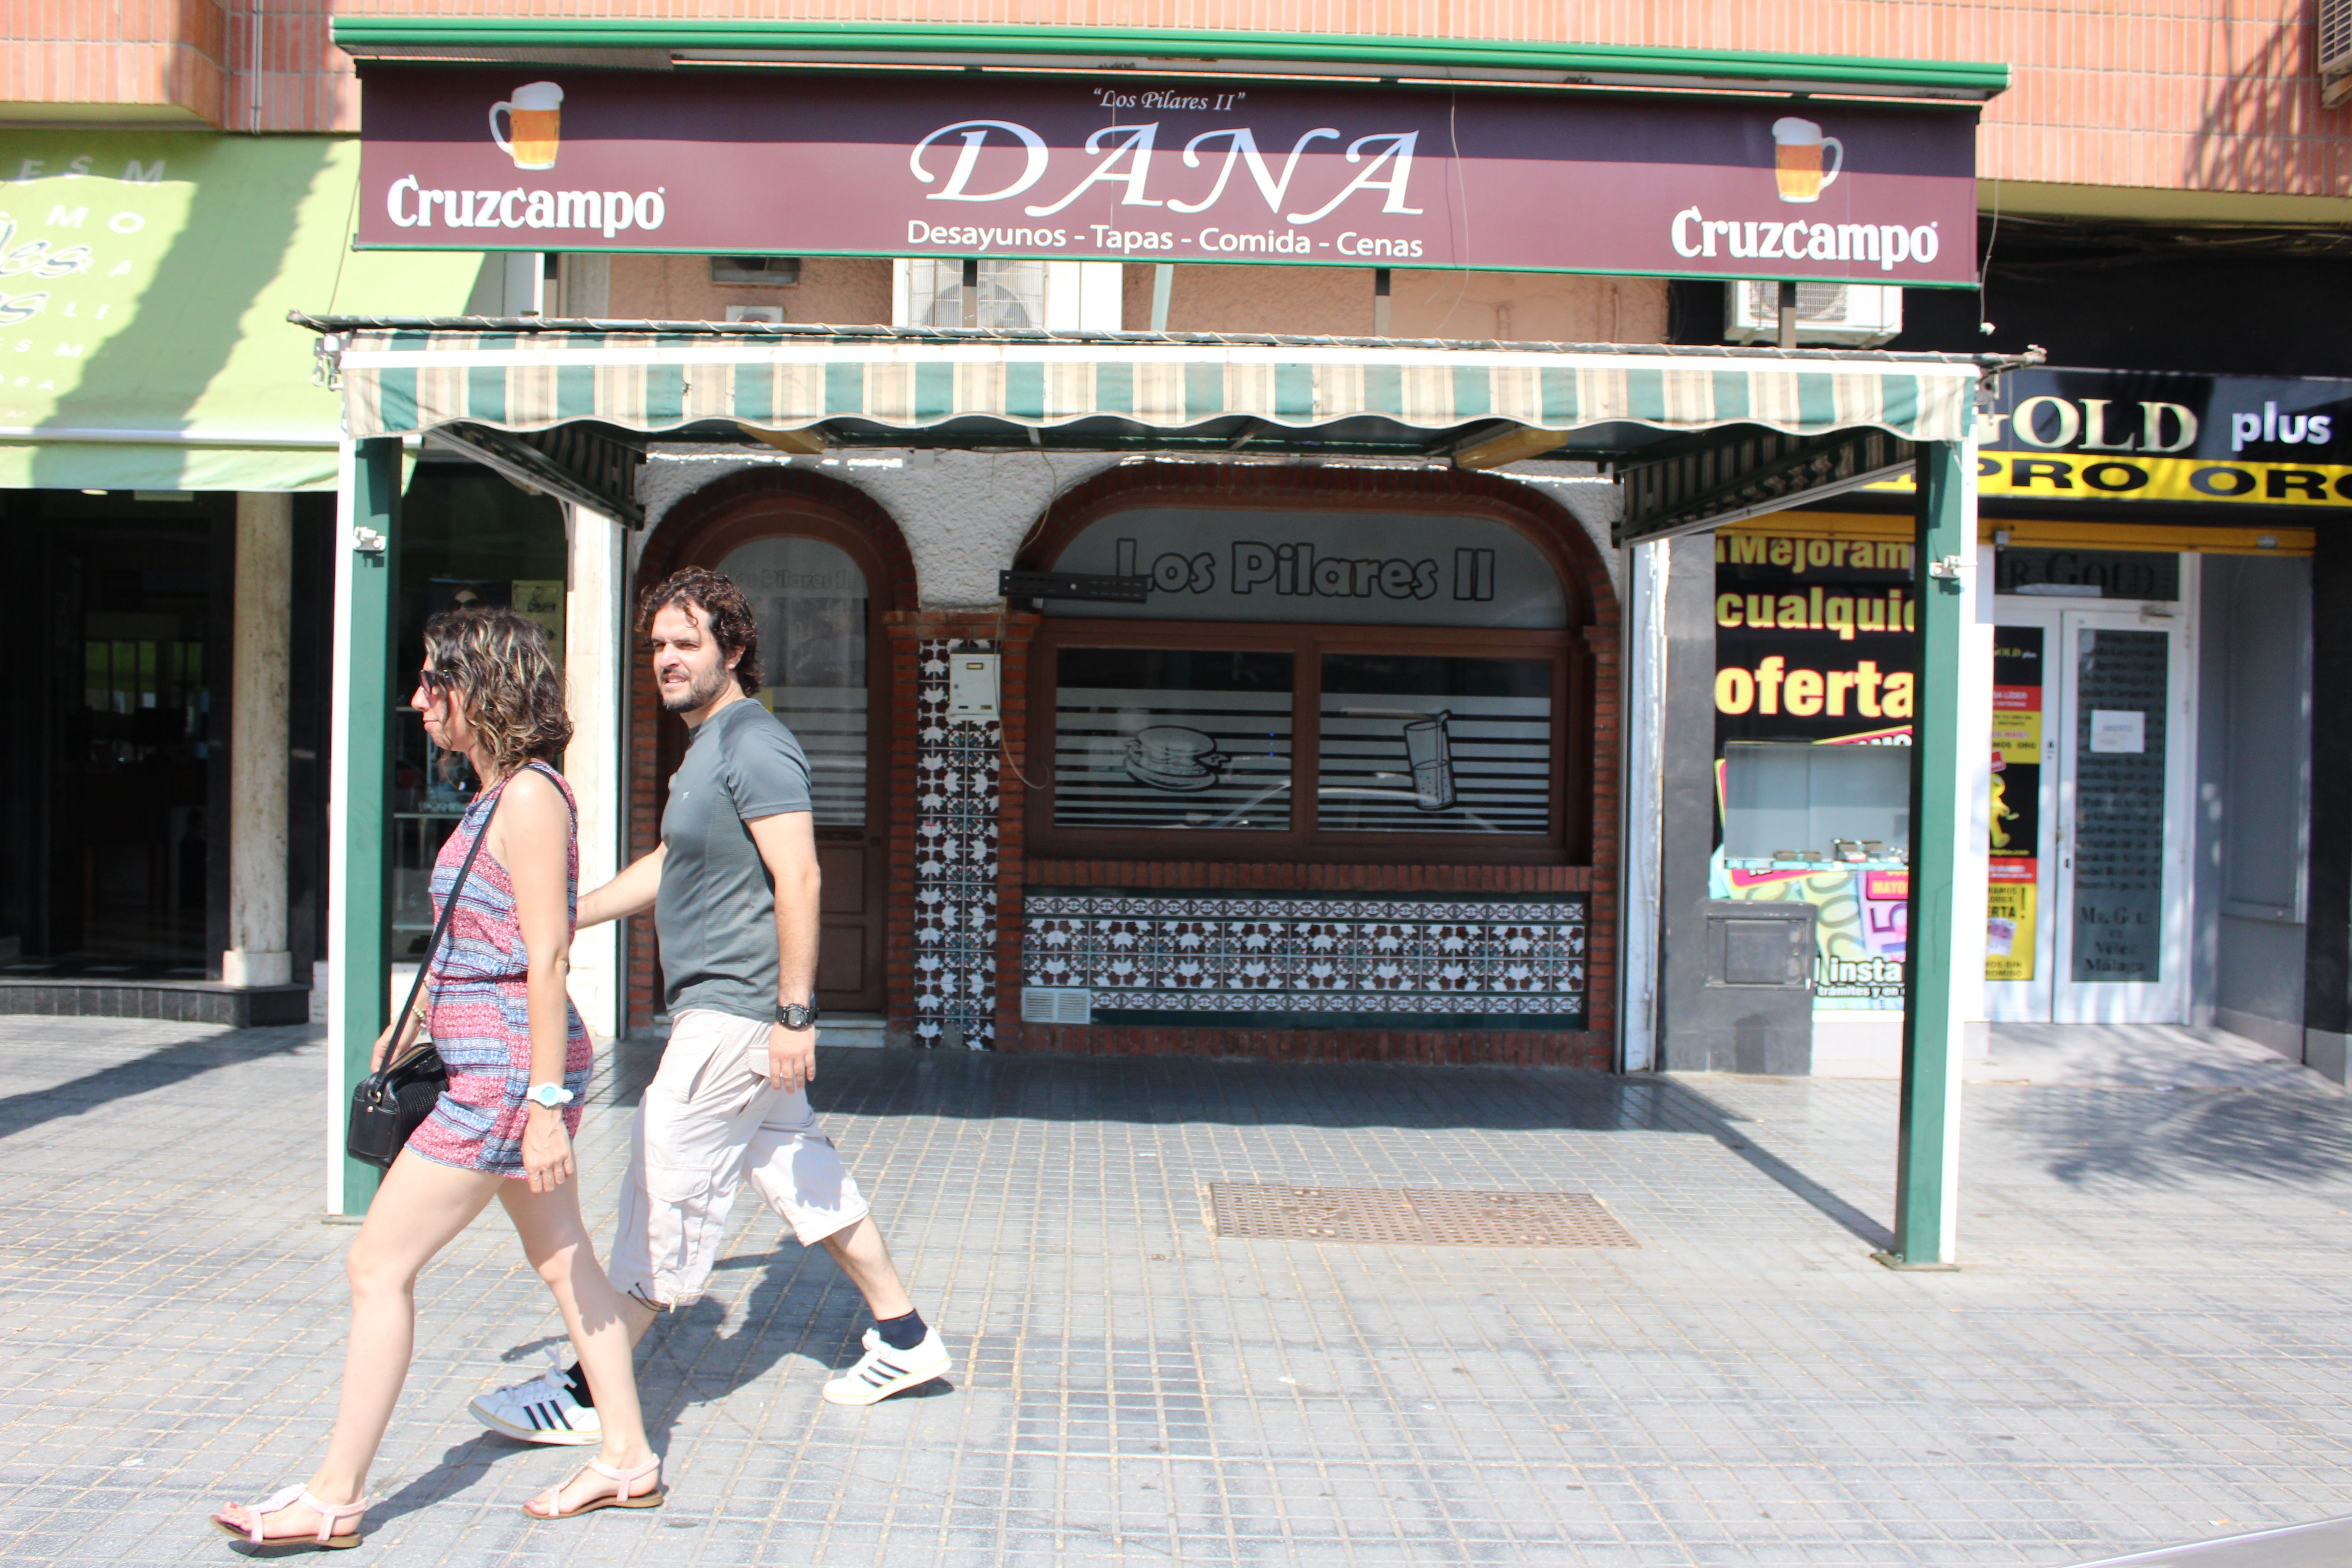 Dana desaparecida Malaga Bar